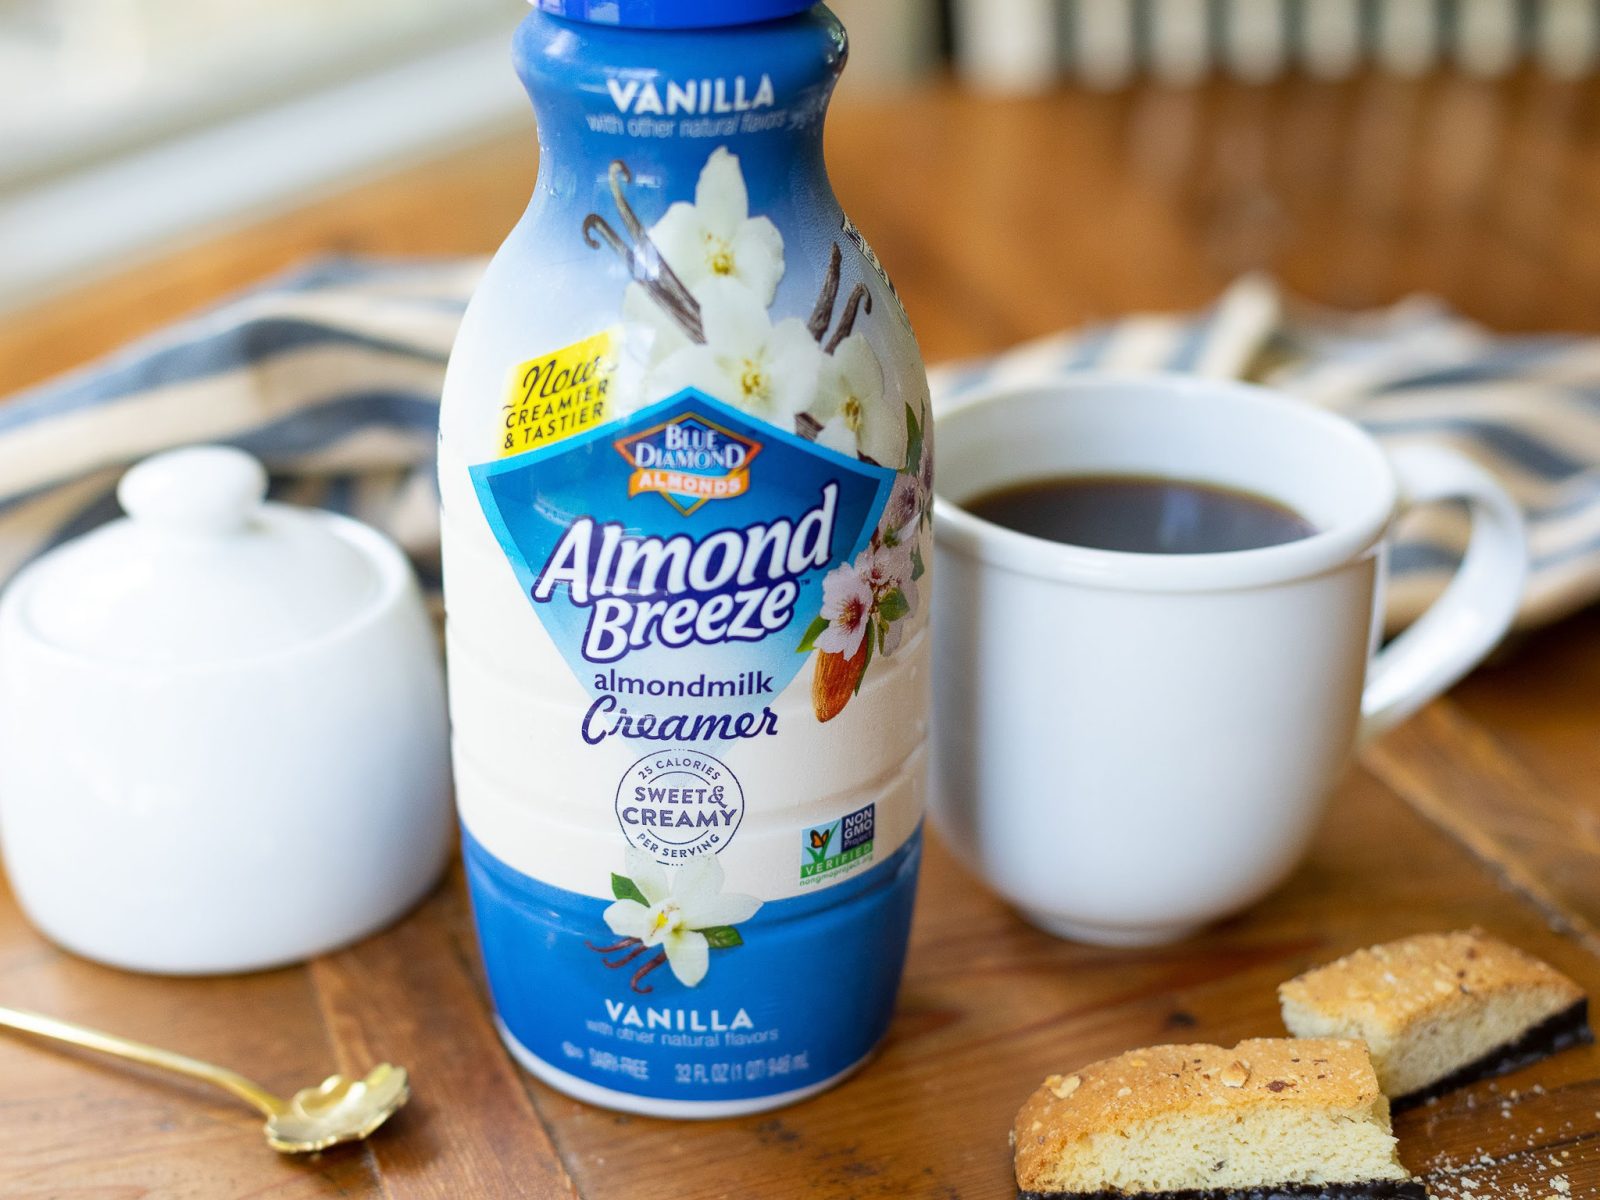 Almond Breeze Almondmilk Creamer As Low As $2.50 At Publix